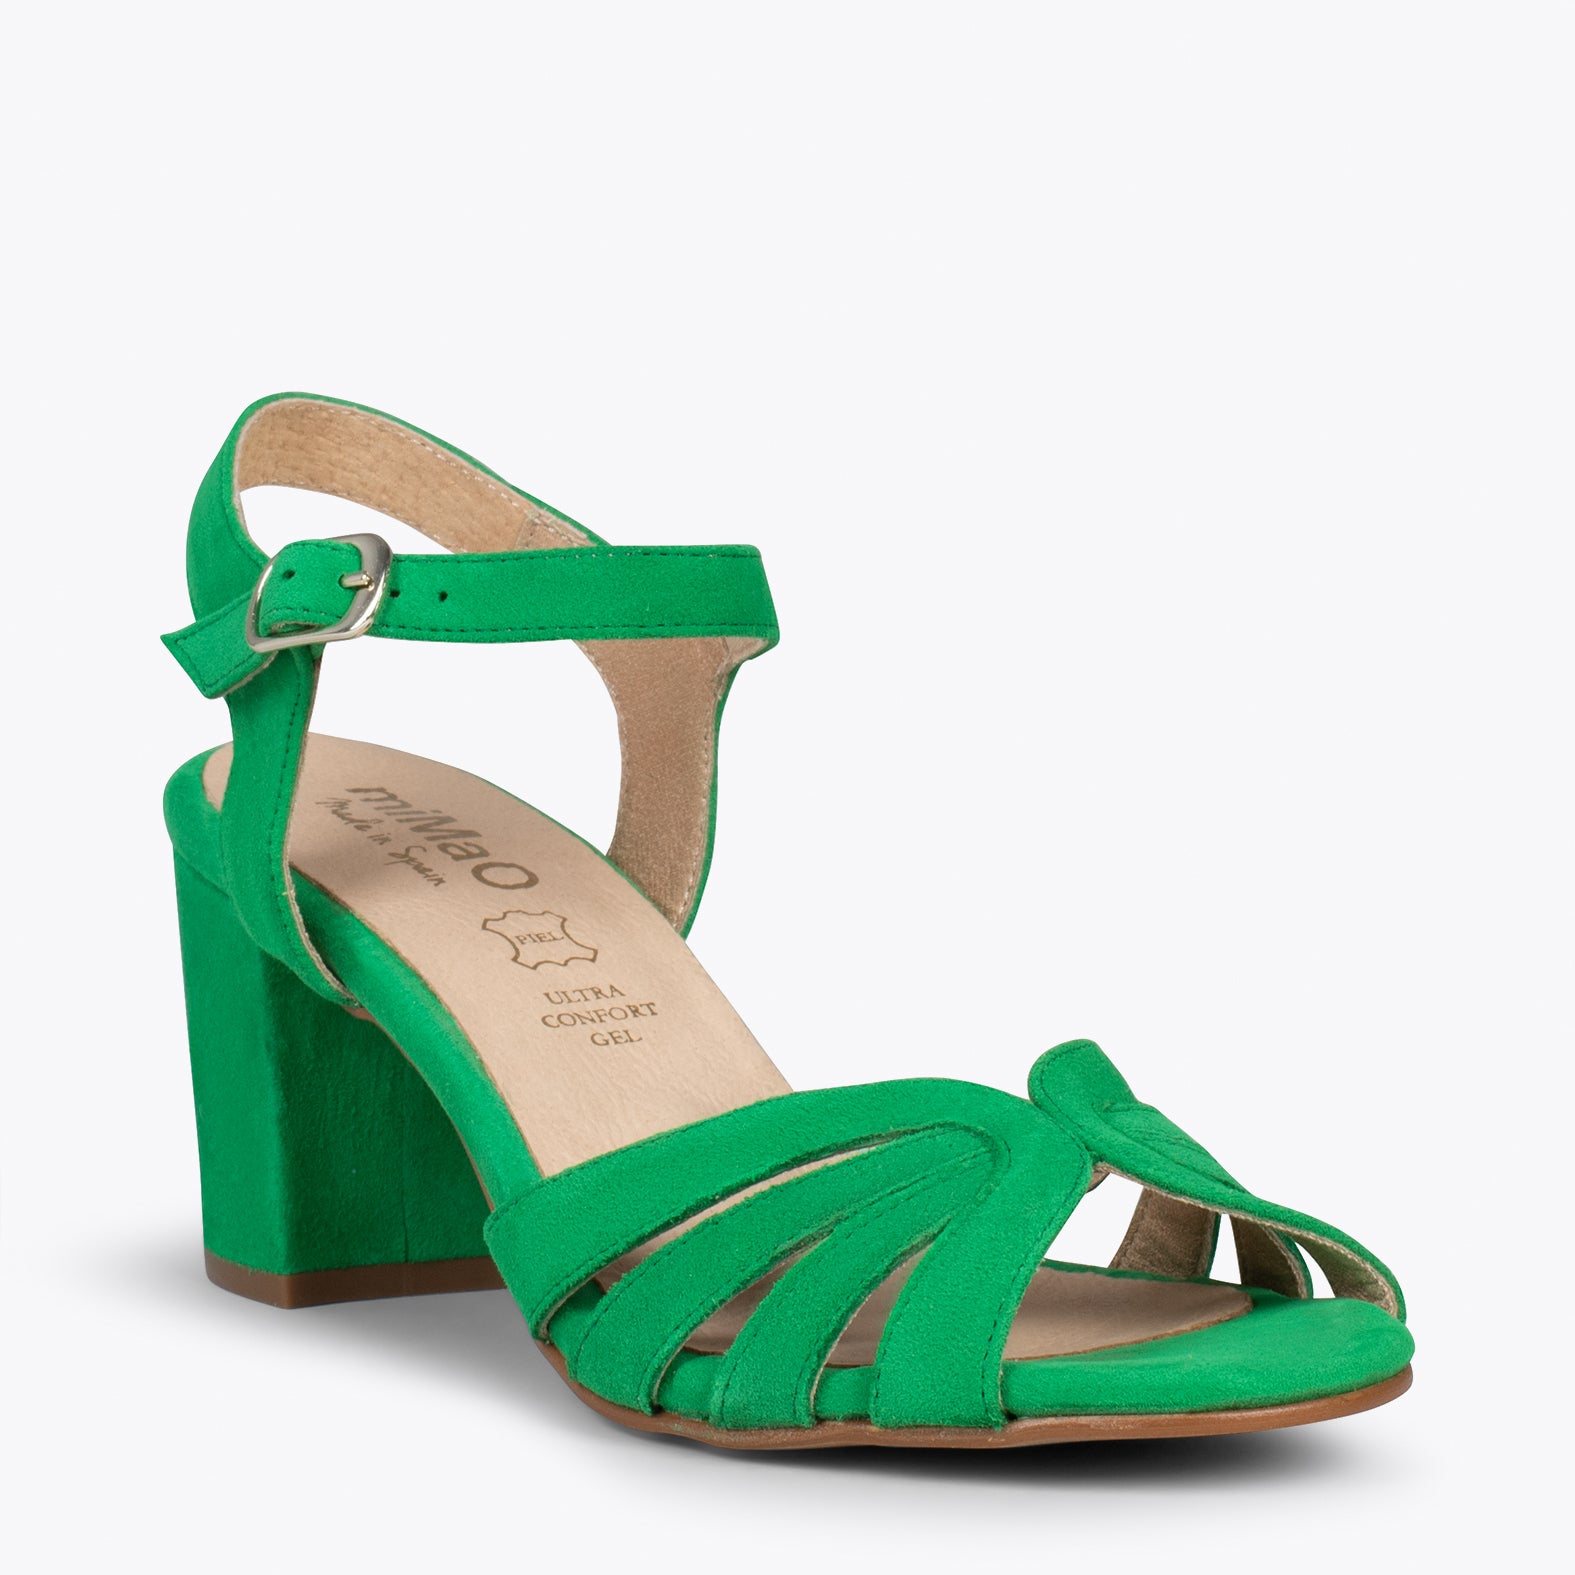 MUSE – GREEN block heel sandals